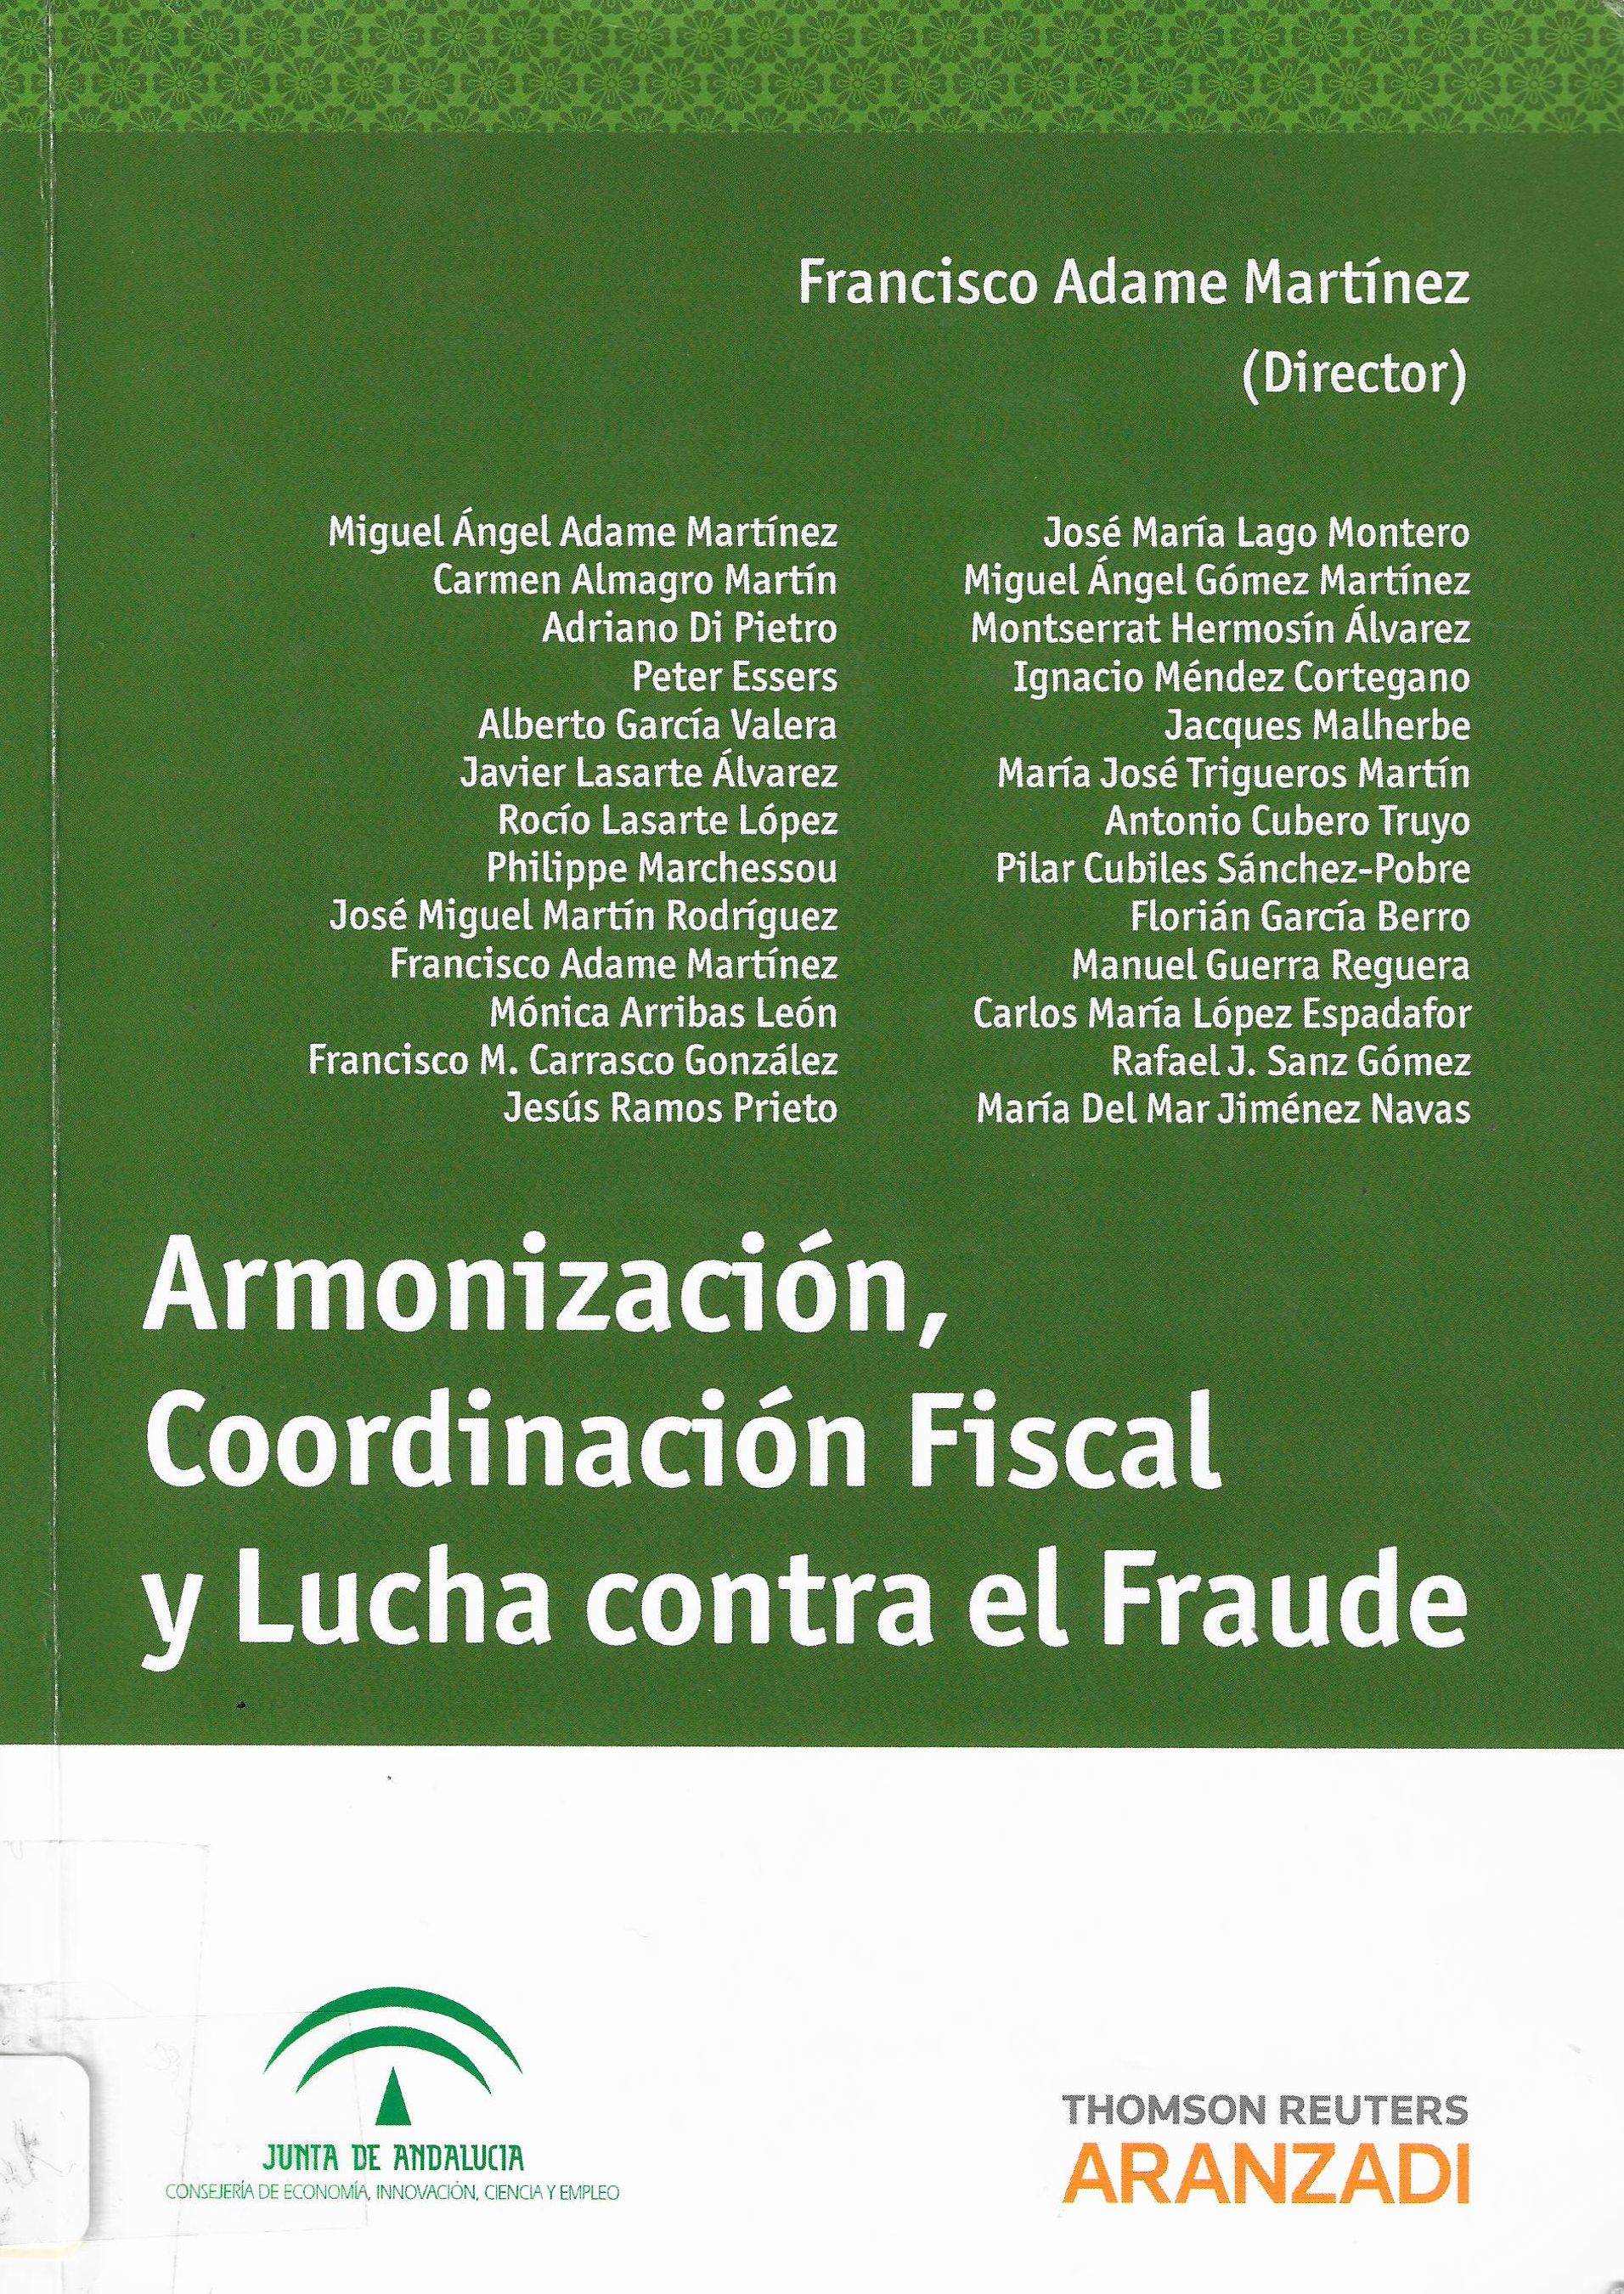 Imagen de portada del libro Armonización, coordinación fiscal y lucha contra el fraude